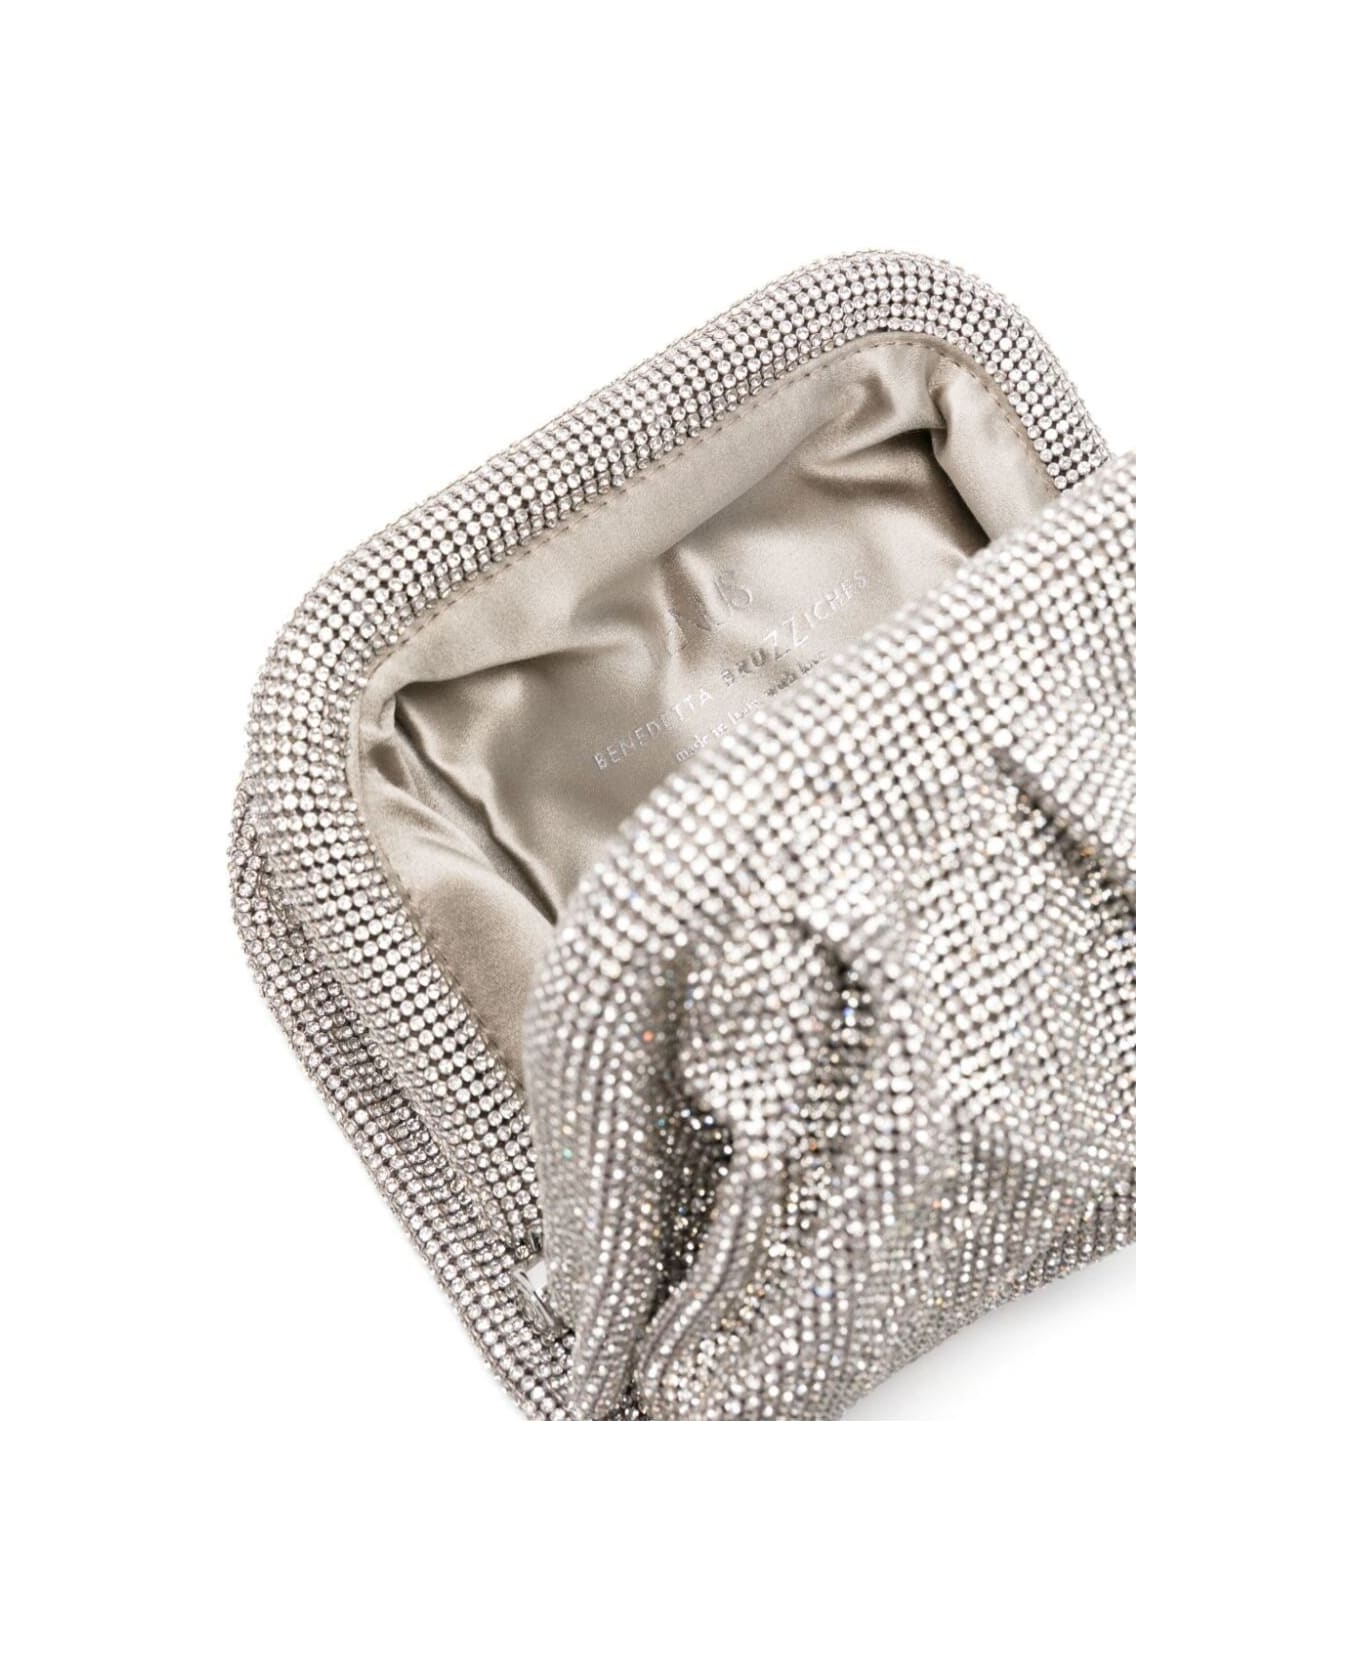 Benedetta Bruzziches 'venus La Petite' Silver Clutch Bag In Fabric With Allover Crystals Woman - Metallic クラッチバッグ